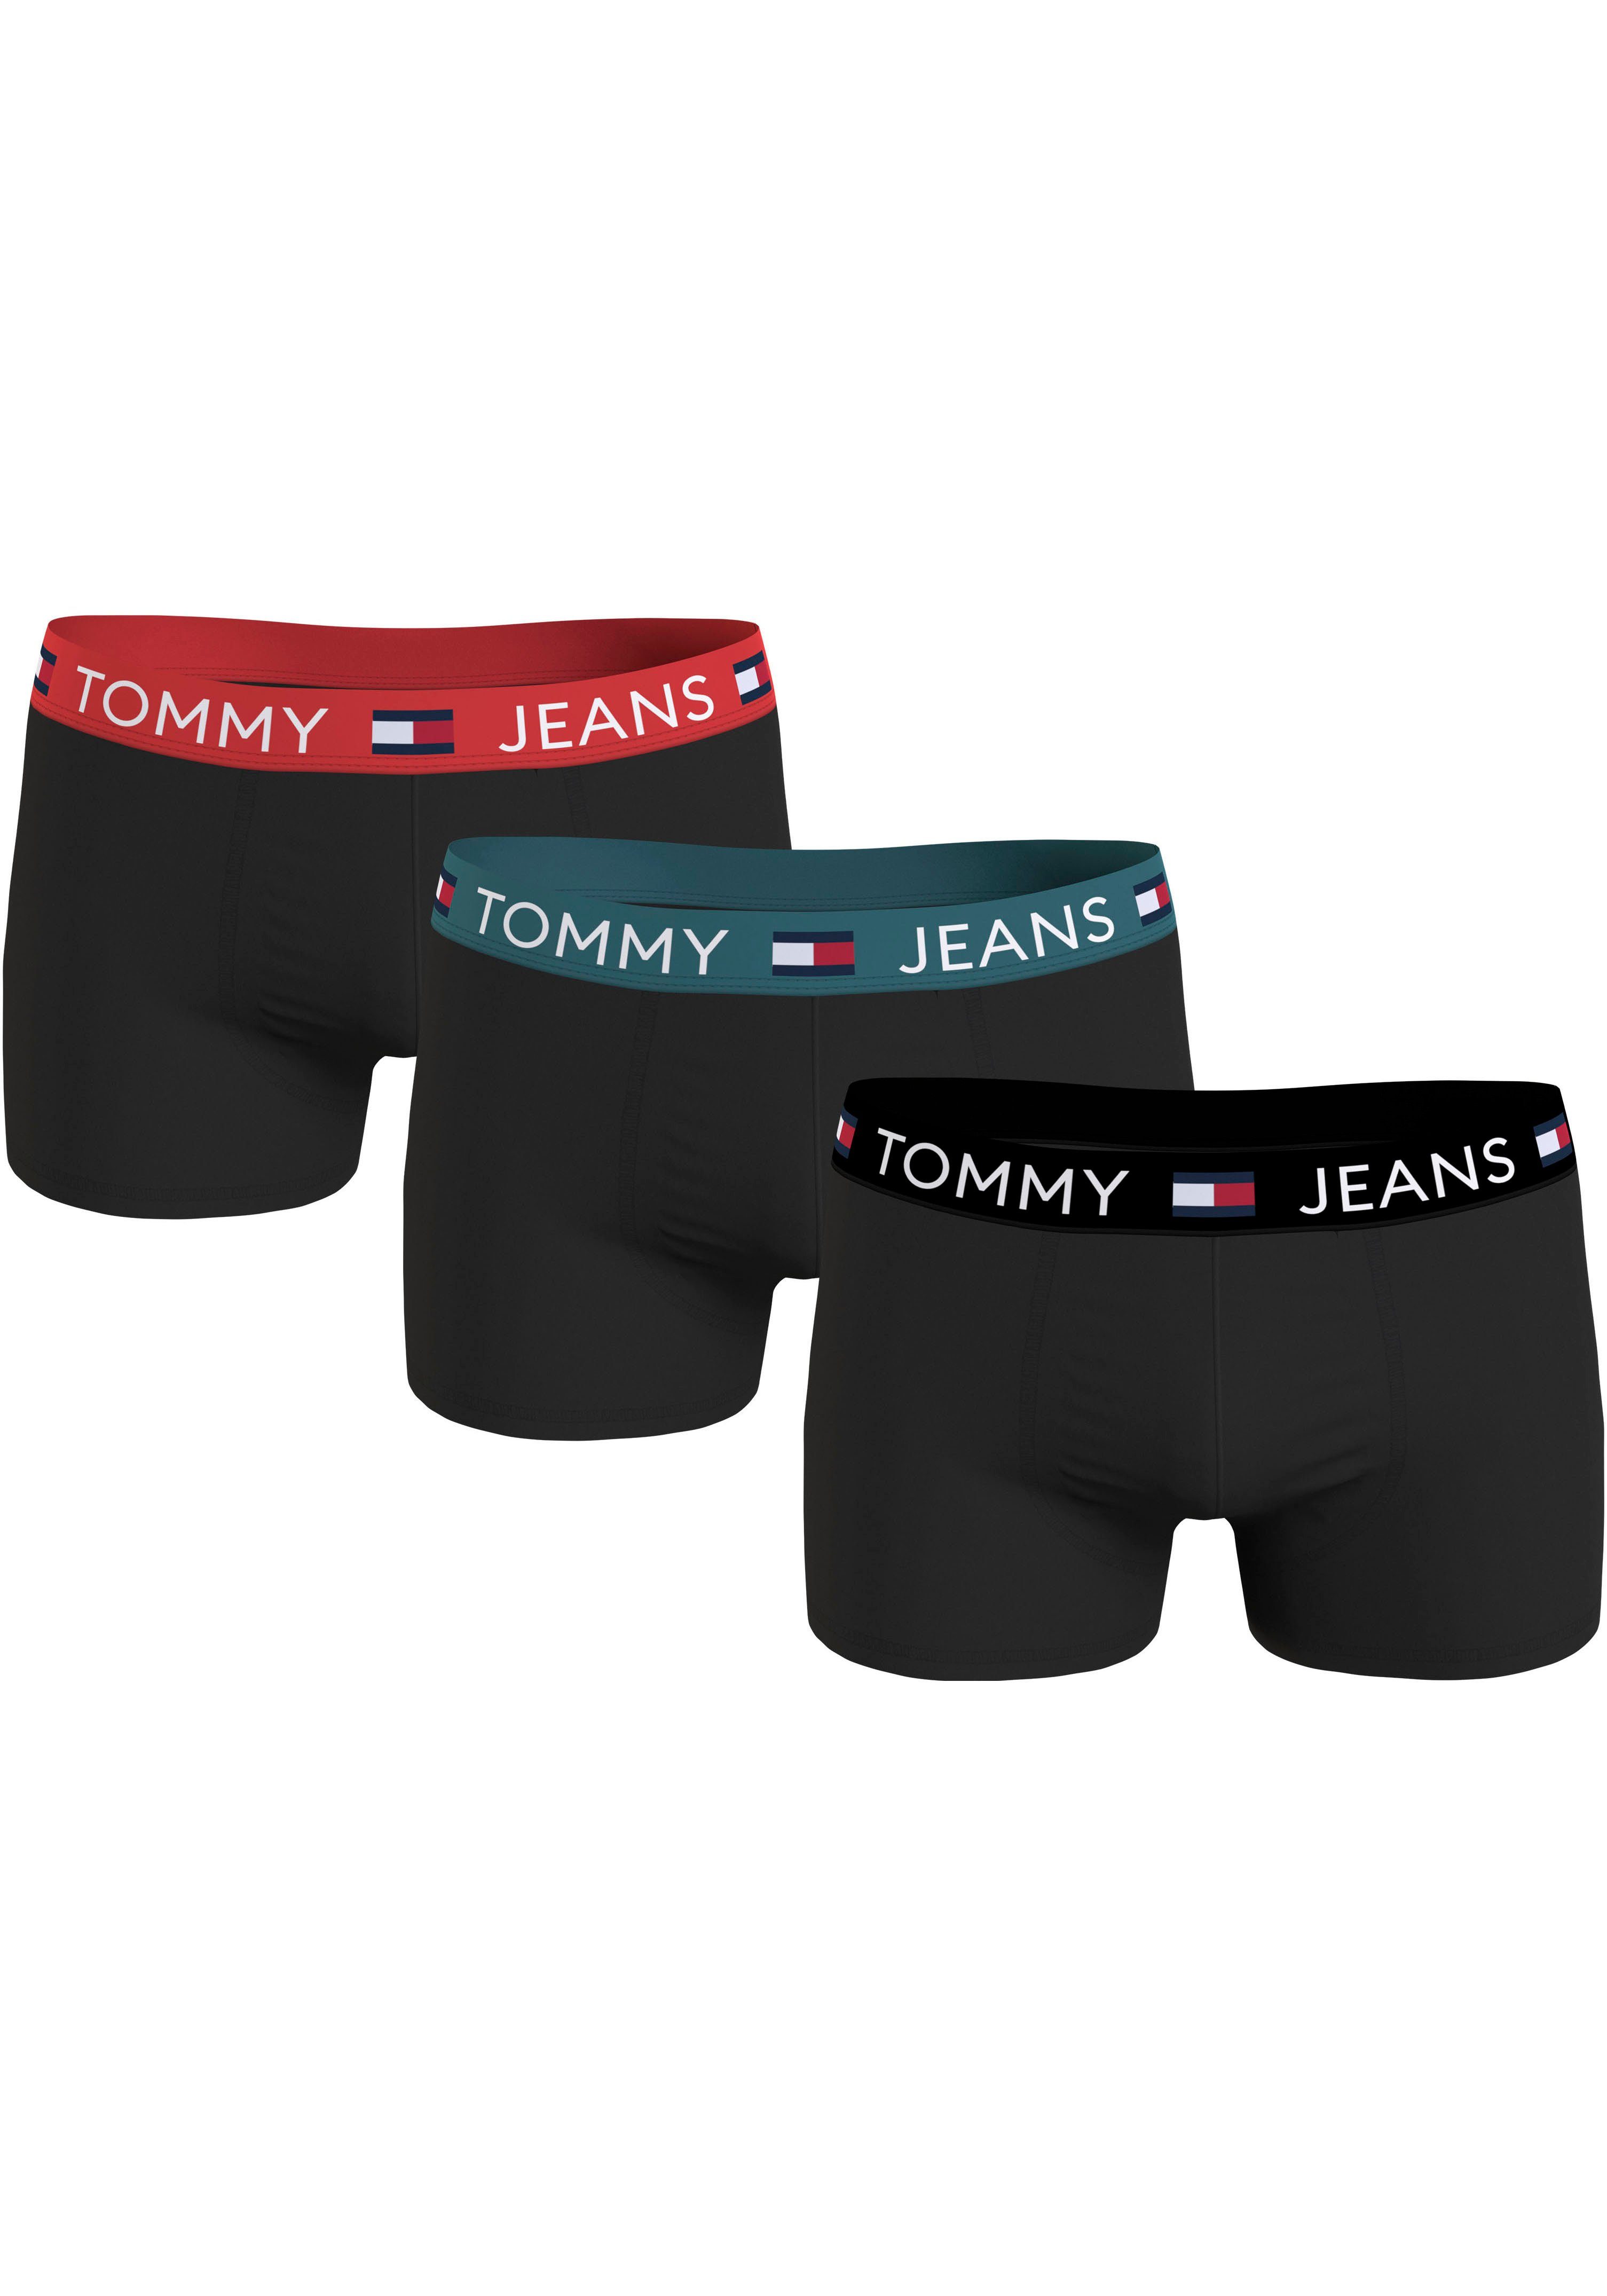 Tommy Hilfiger Underwear Trunk 3P TRUNK WB (Set van 3)